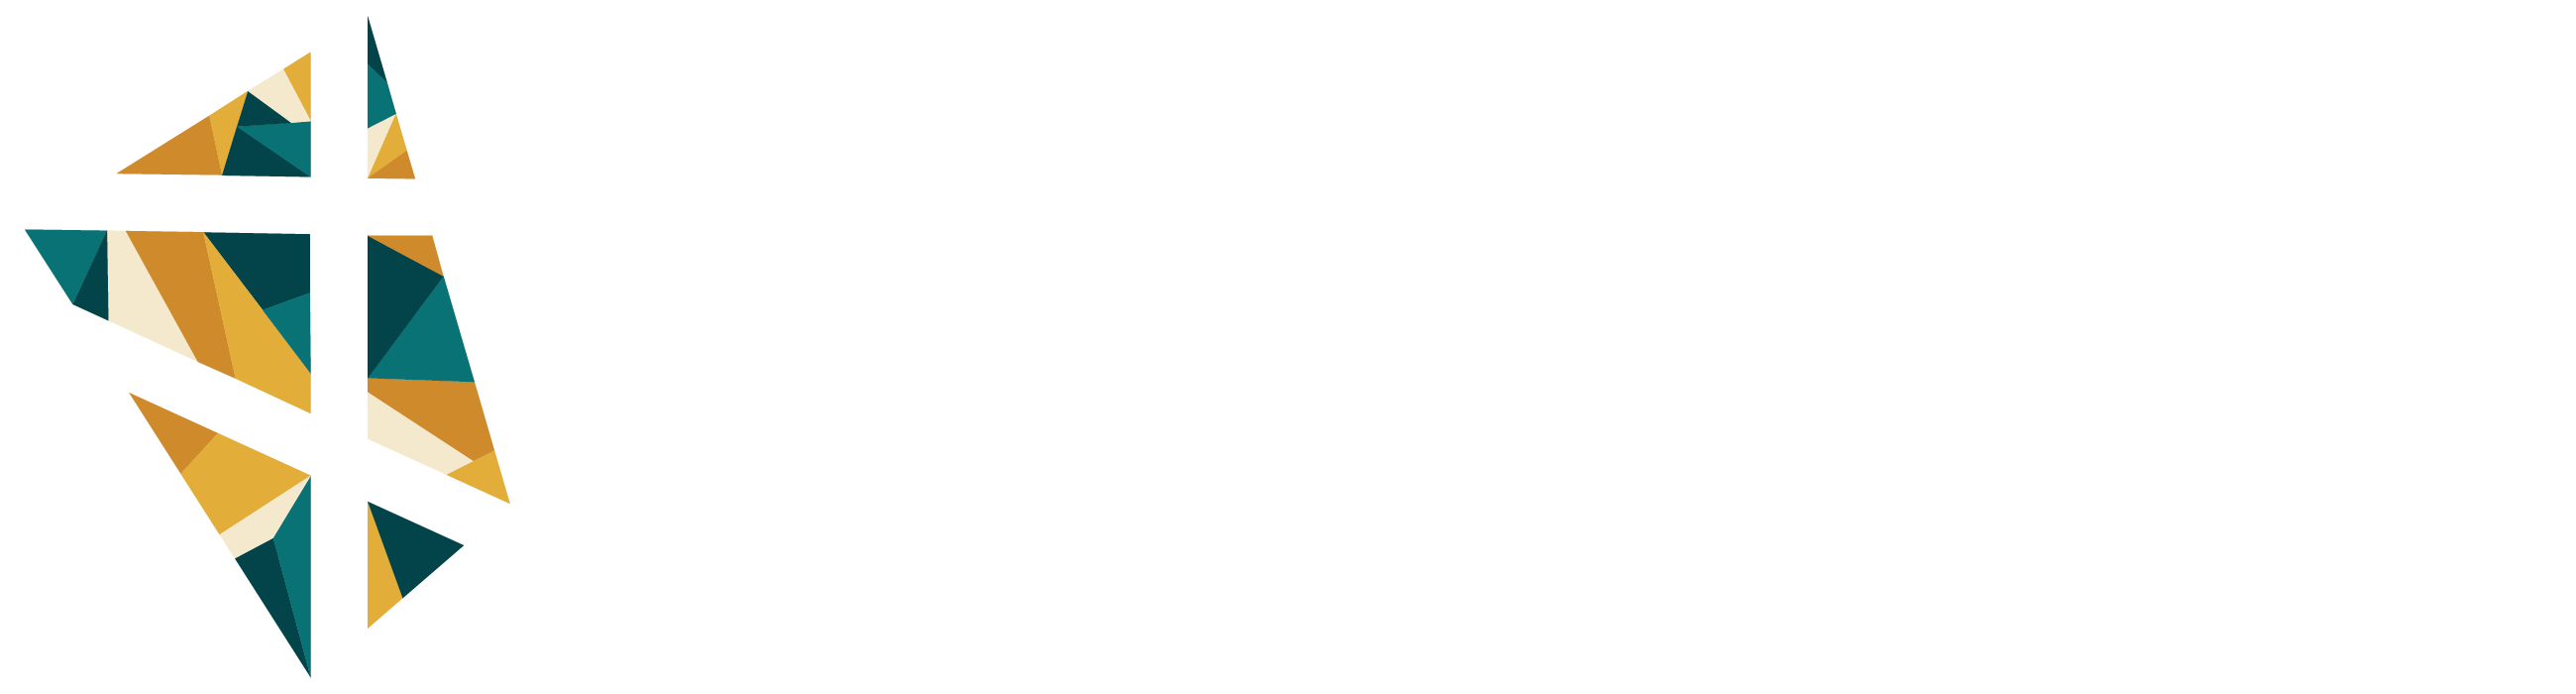 Focus Crossroads